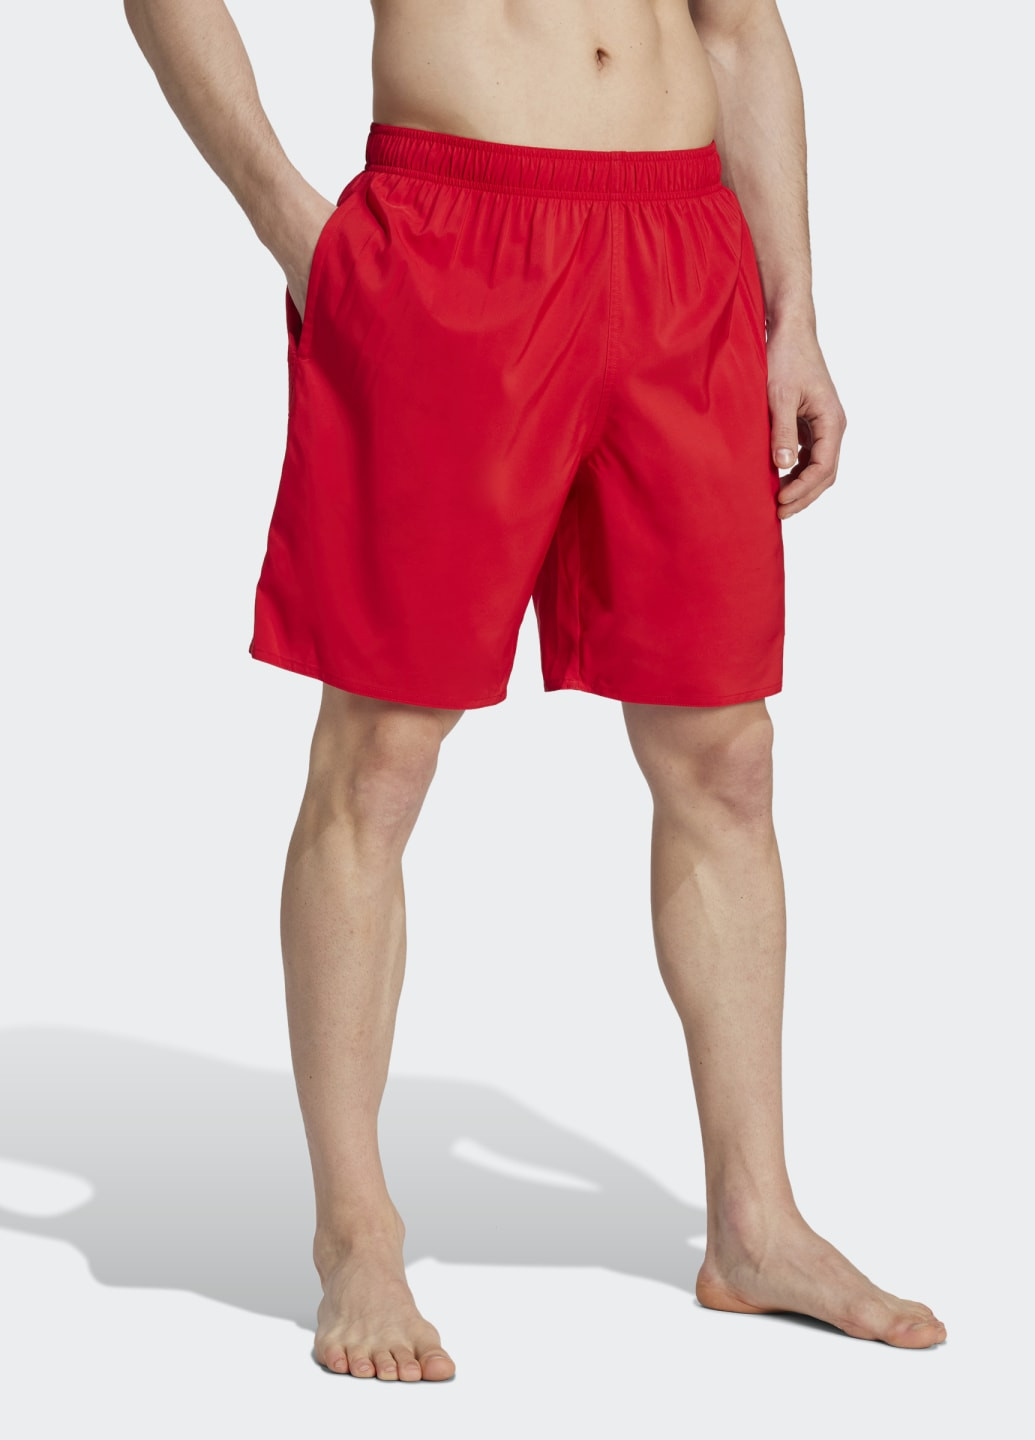 Мужские красные спортивные плавательные шорты solid clx classic-length adidas